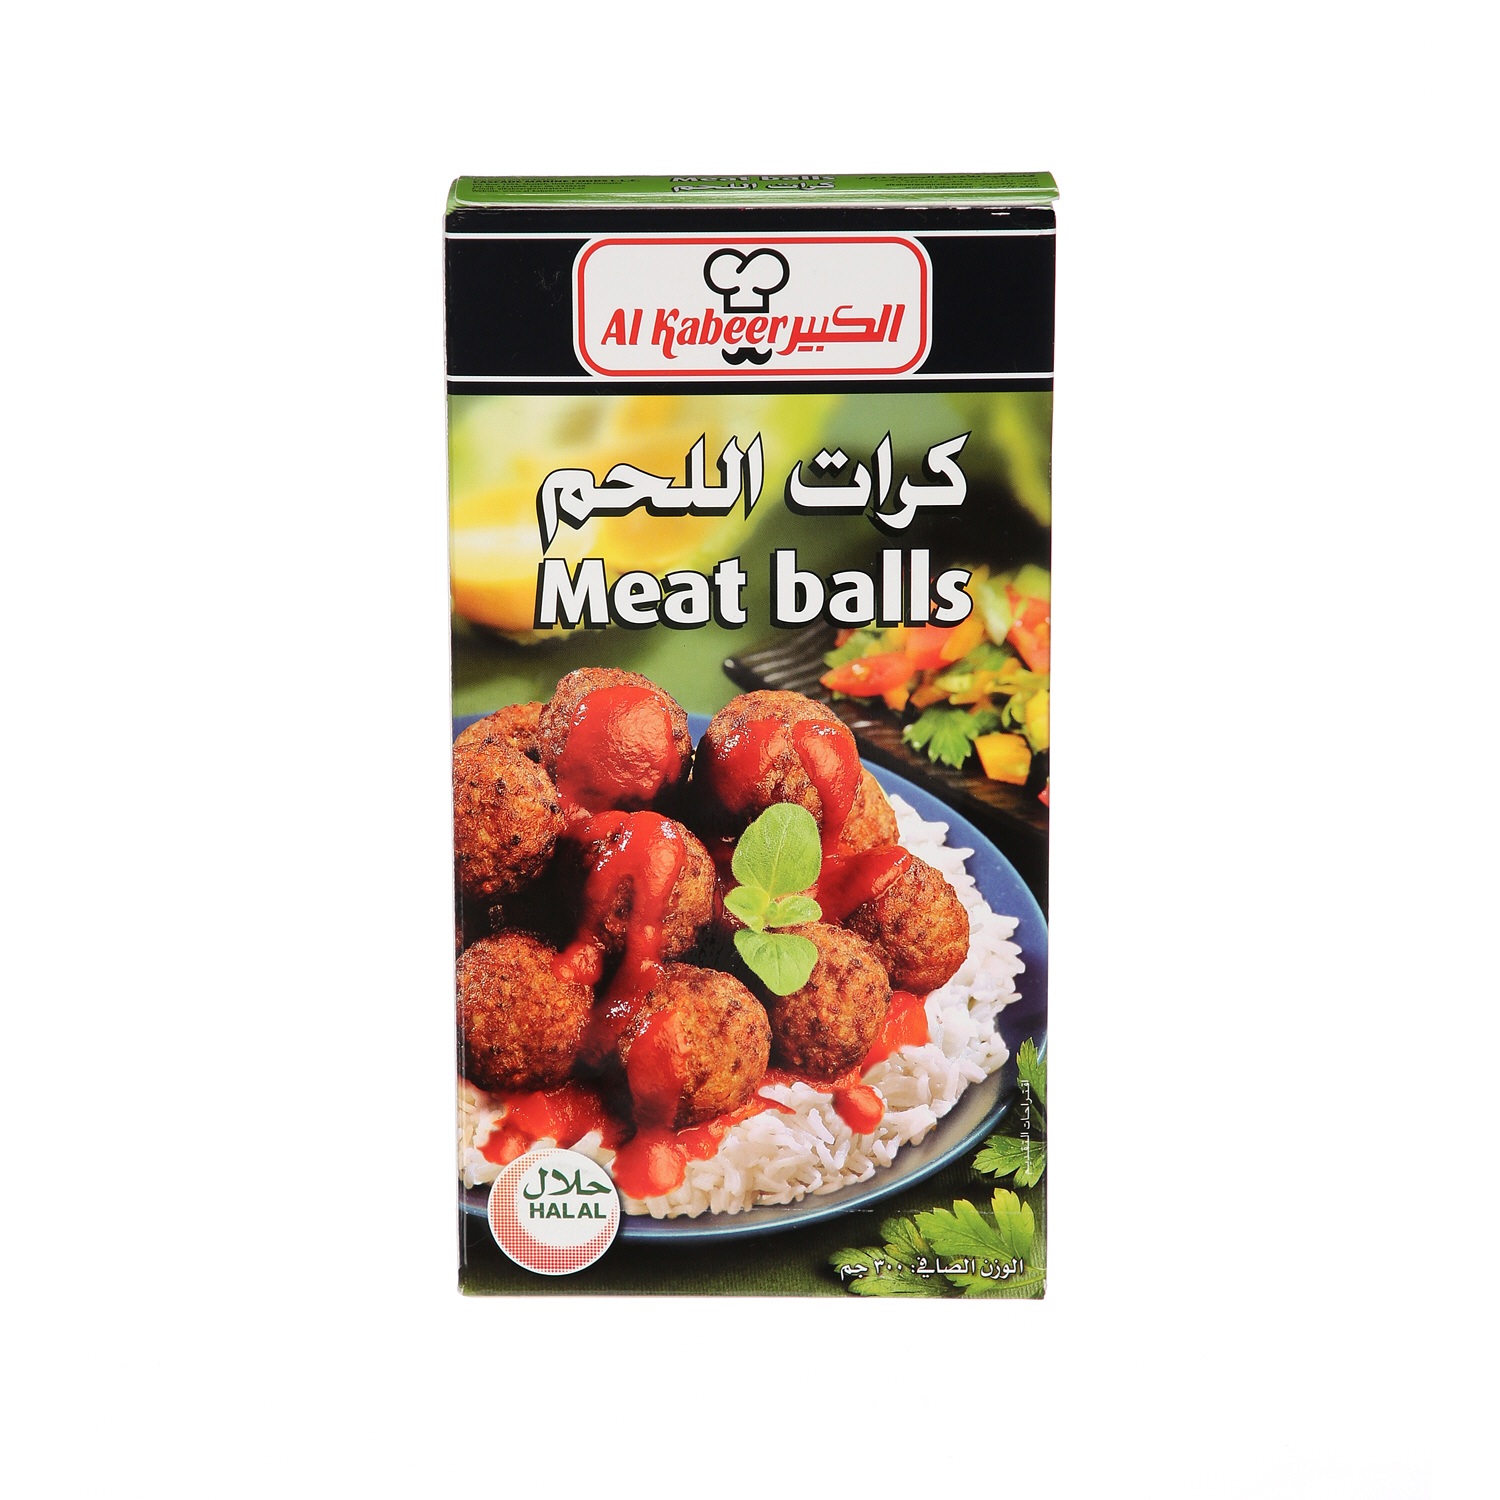 Al Kabeer Meat Balls 300gm